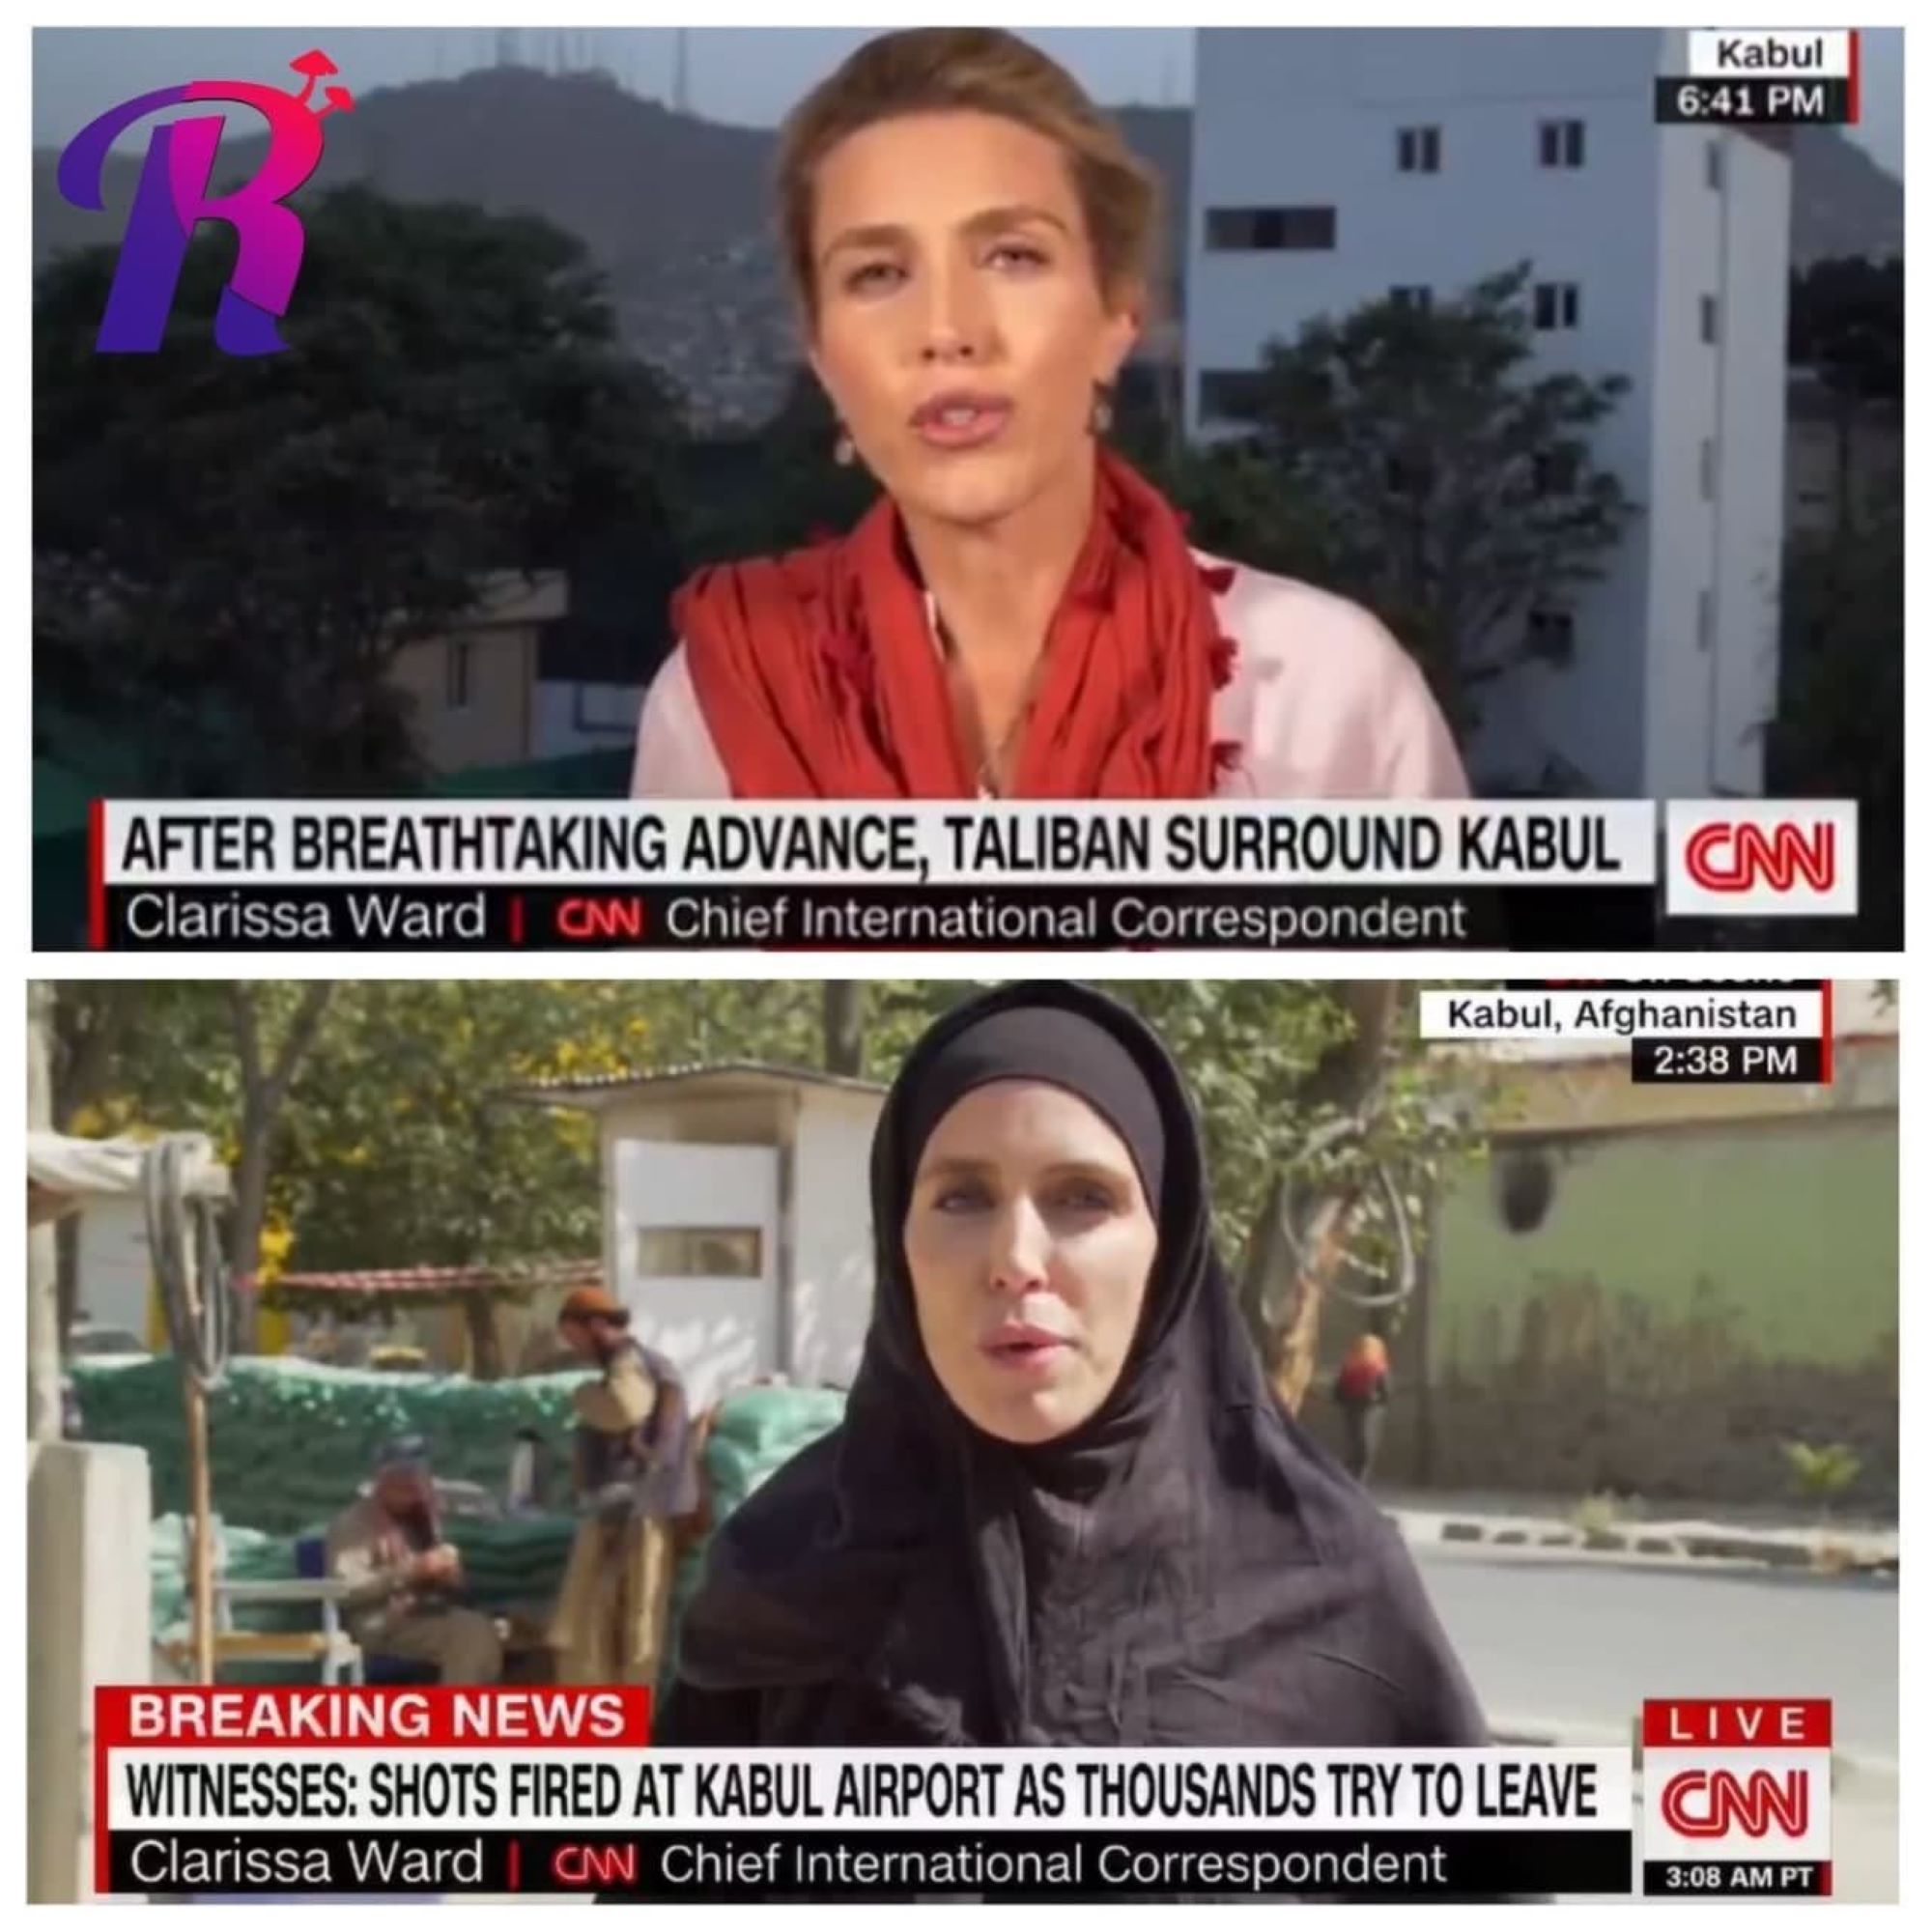 La "imprecisió" darrere de la imatge de la corresponsal de la CNN